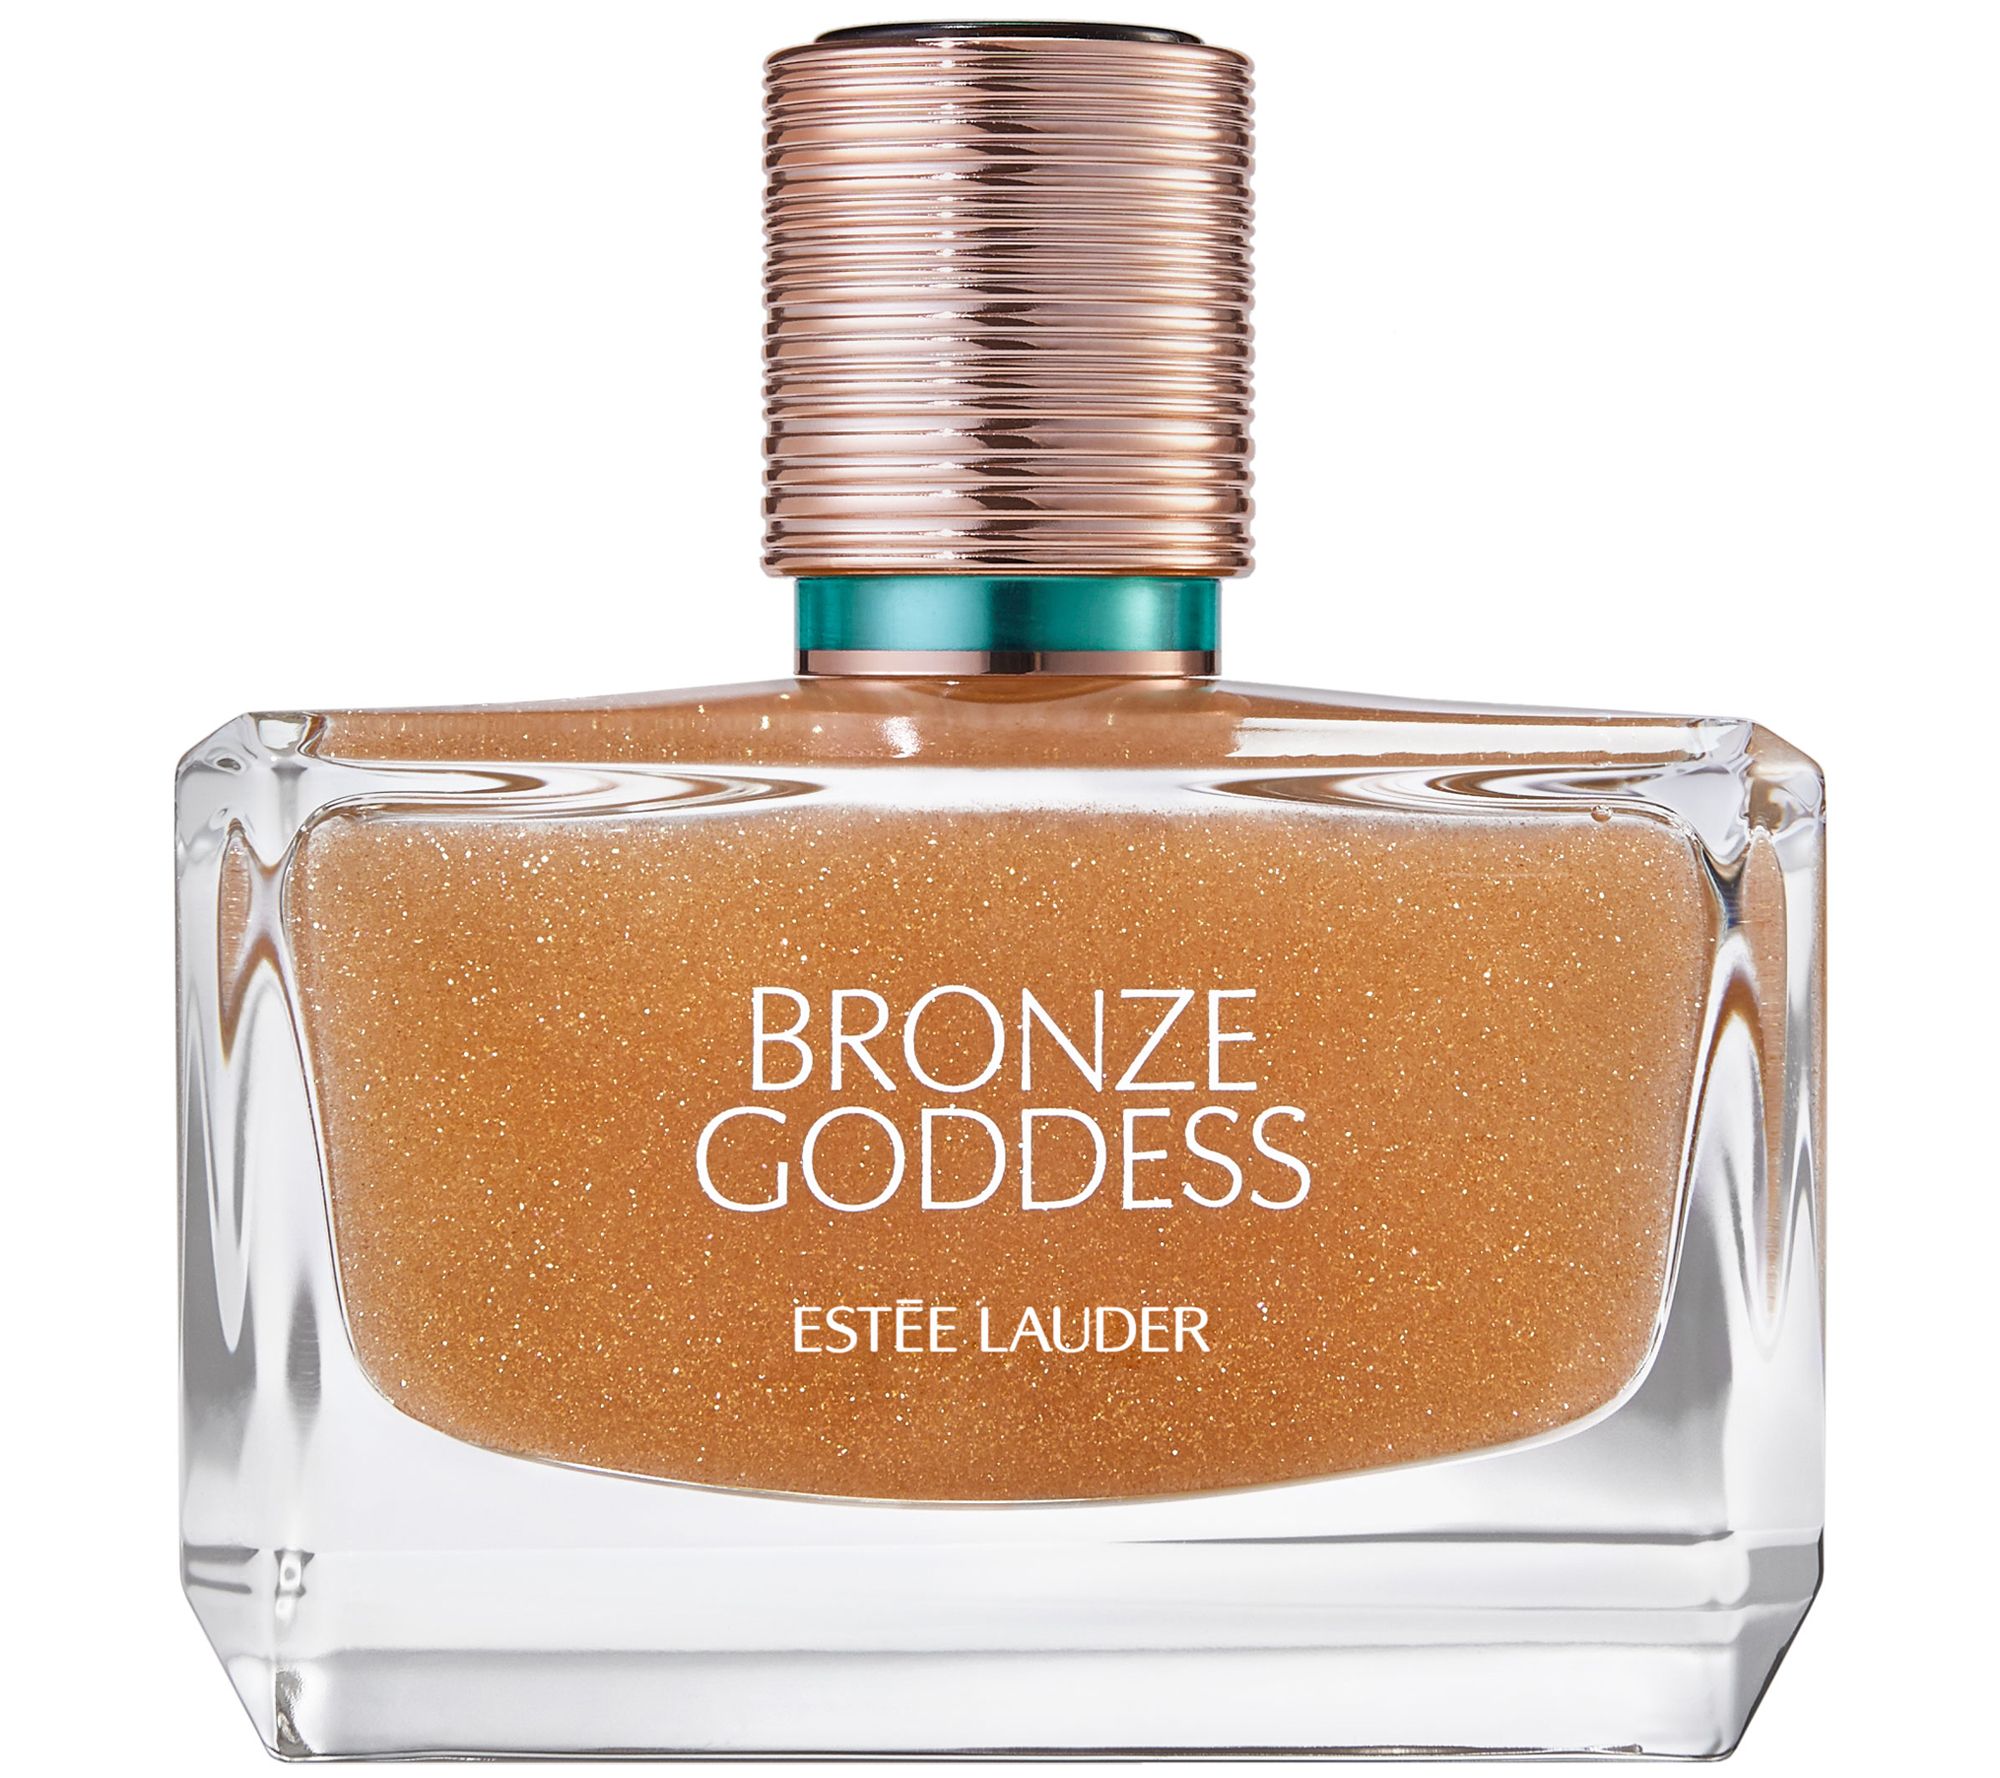 Estee Lauder Bronze Goddess Azur Eau de Toilette Spray - 1.7 oz.